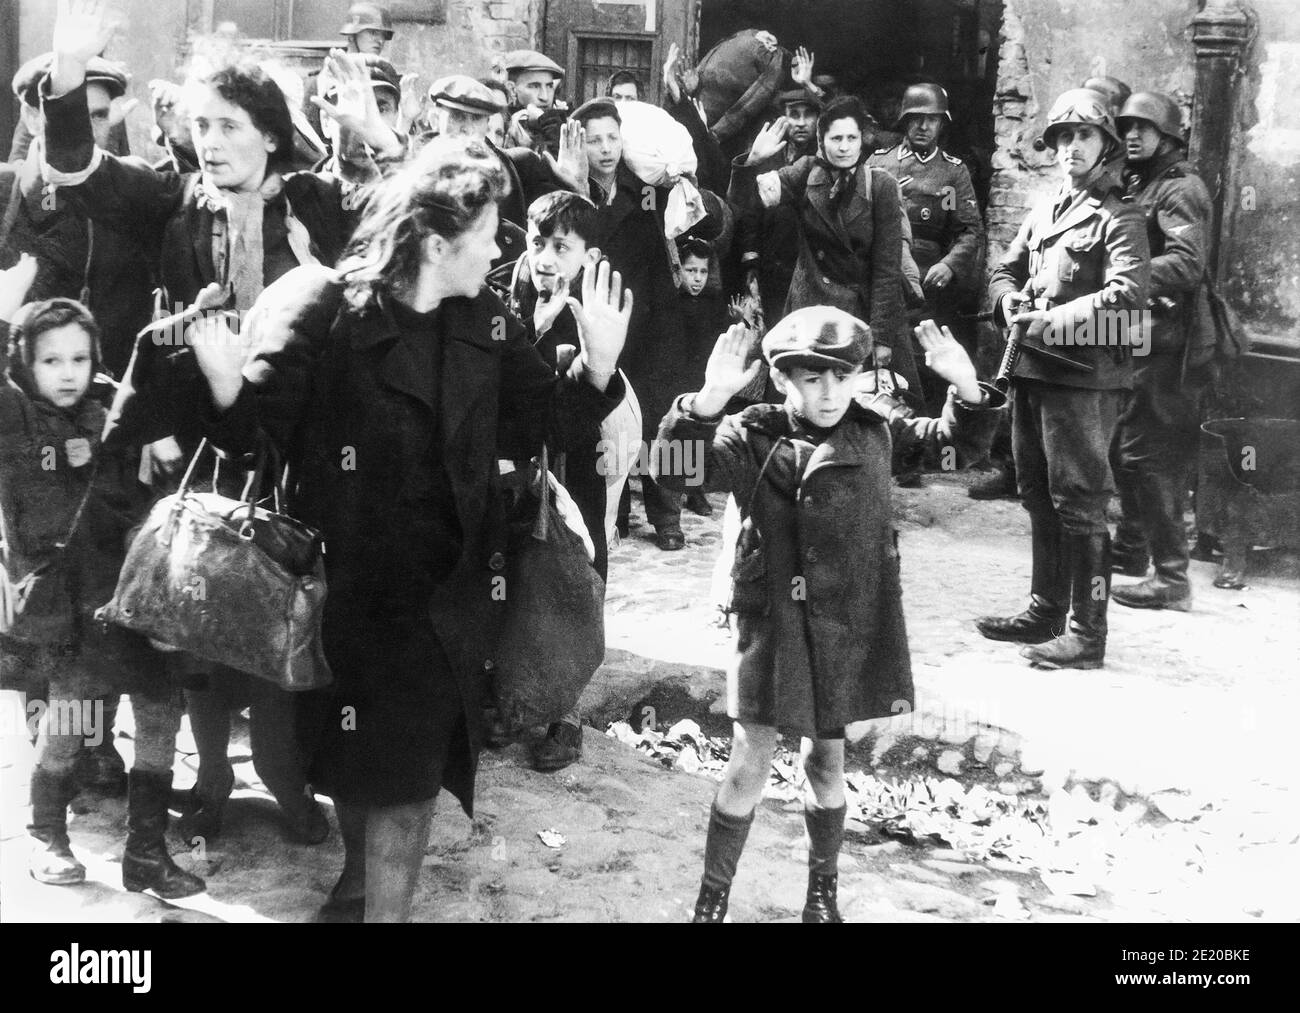 Un garçon lève les mains au-dessus de sa tête alors que les soldats nazis délèvent de force les juifs polonais dans le soulèvement du ghetto de Varsovie pour être transporté en train jusqu'au camp d'extermination de Majdanek ou à Treblinka. L'une des photographies les plus emblématiques de la Seconde Guerre mondiale, l'image, probablement d'avril ou mai 1943, a été incluse dans le rapport Stoop donné à Heinrich Himmler par le SS et chef de police Jürgen Stroop. Banque D'Images